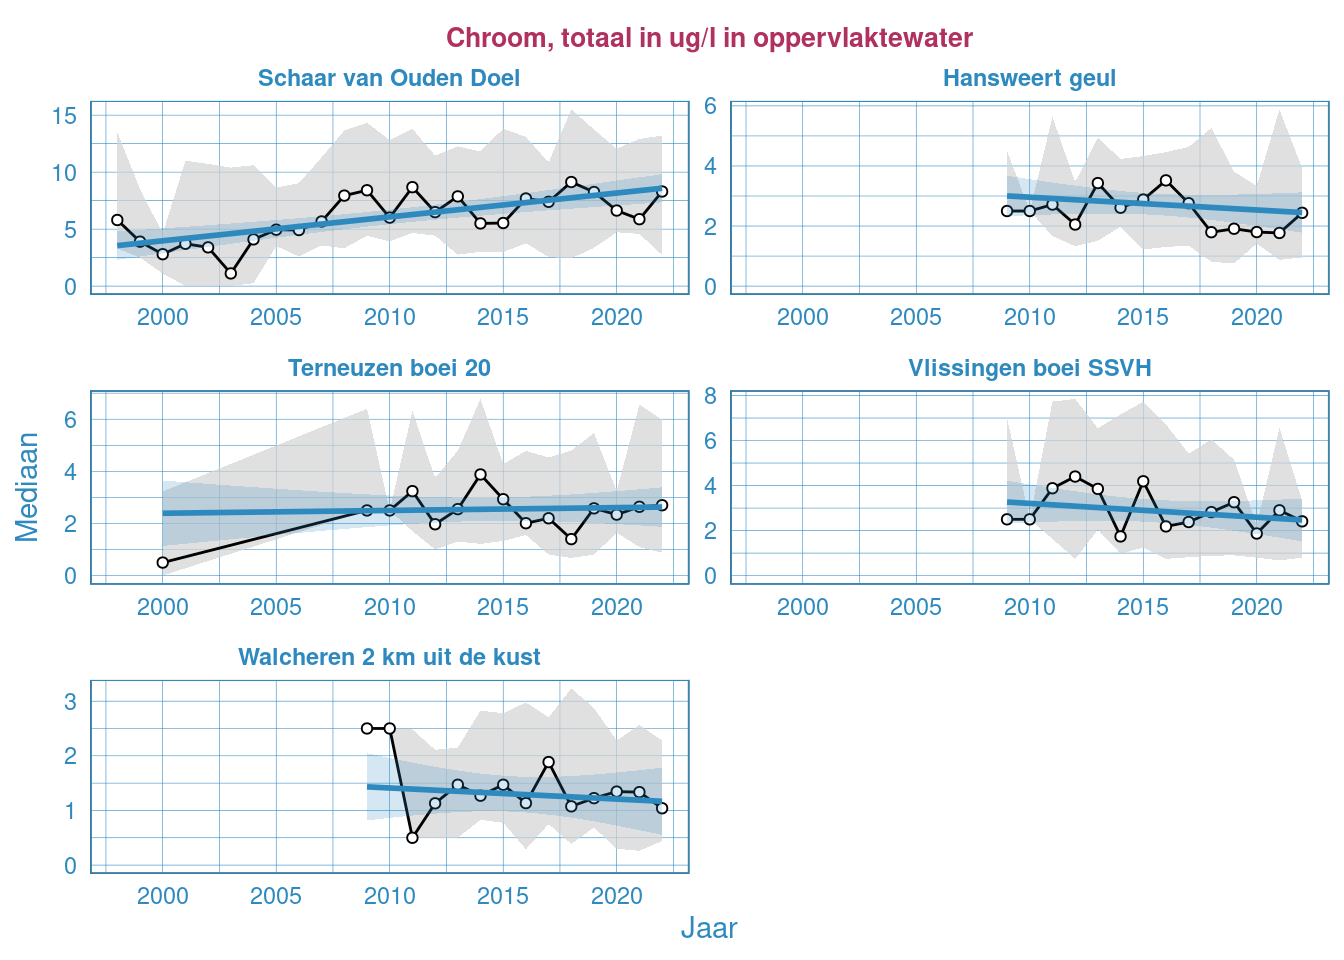 Jaarlijkse Resultaten van het totale chroomgehalte in het oppervlaktewater van de Westerschelde en de monding